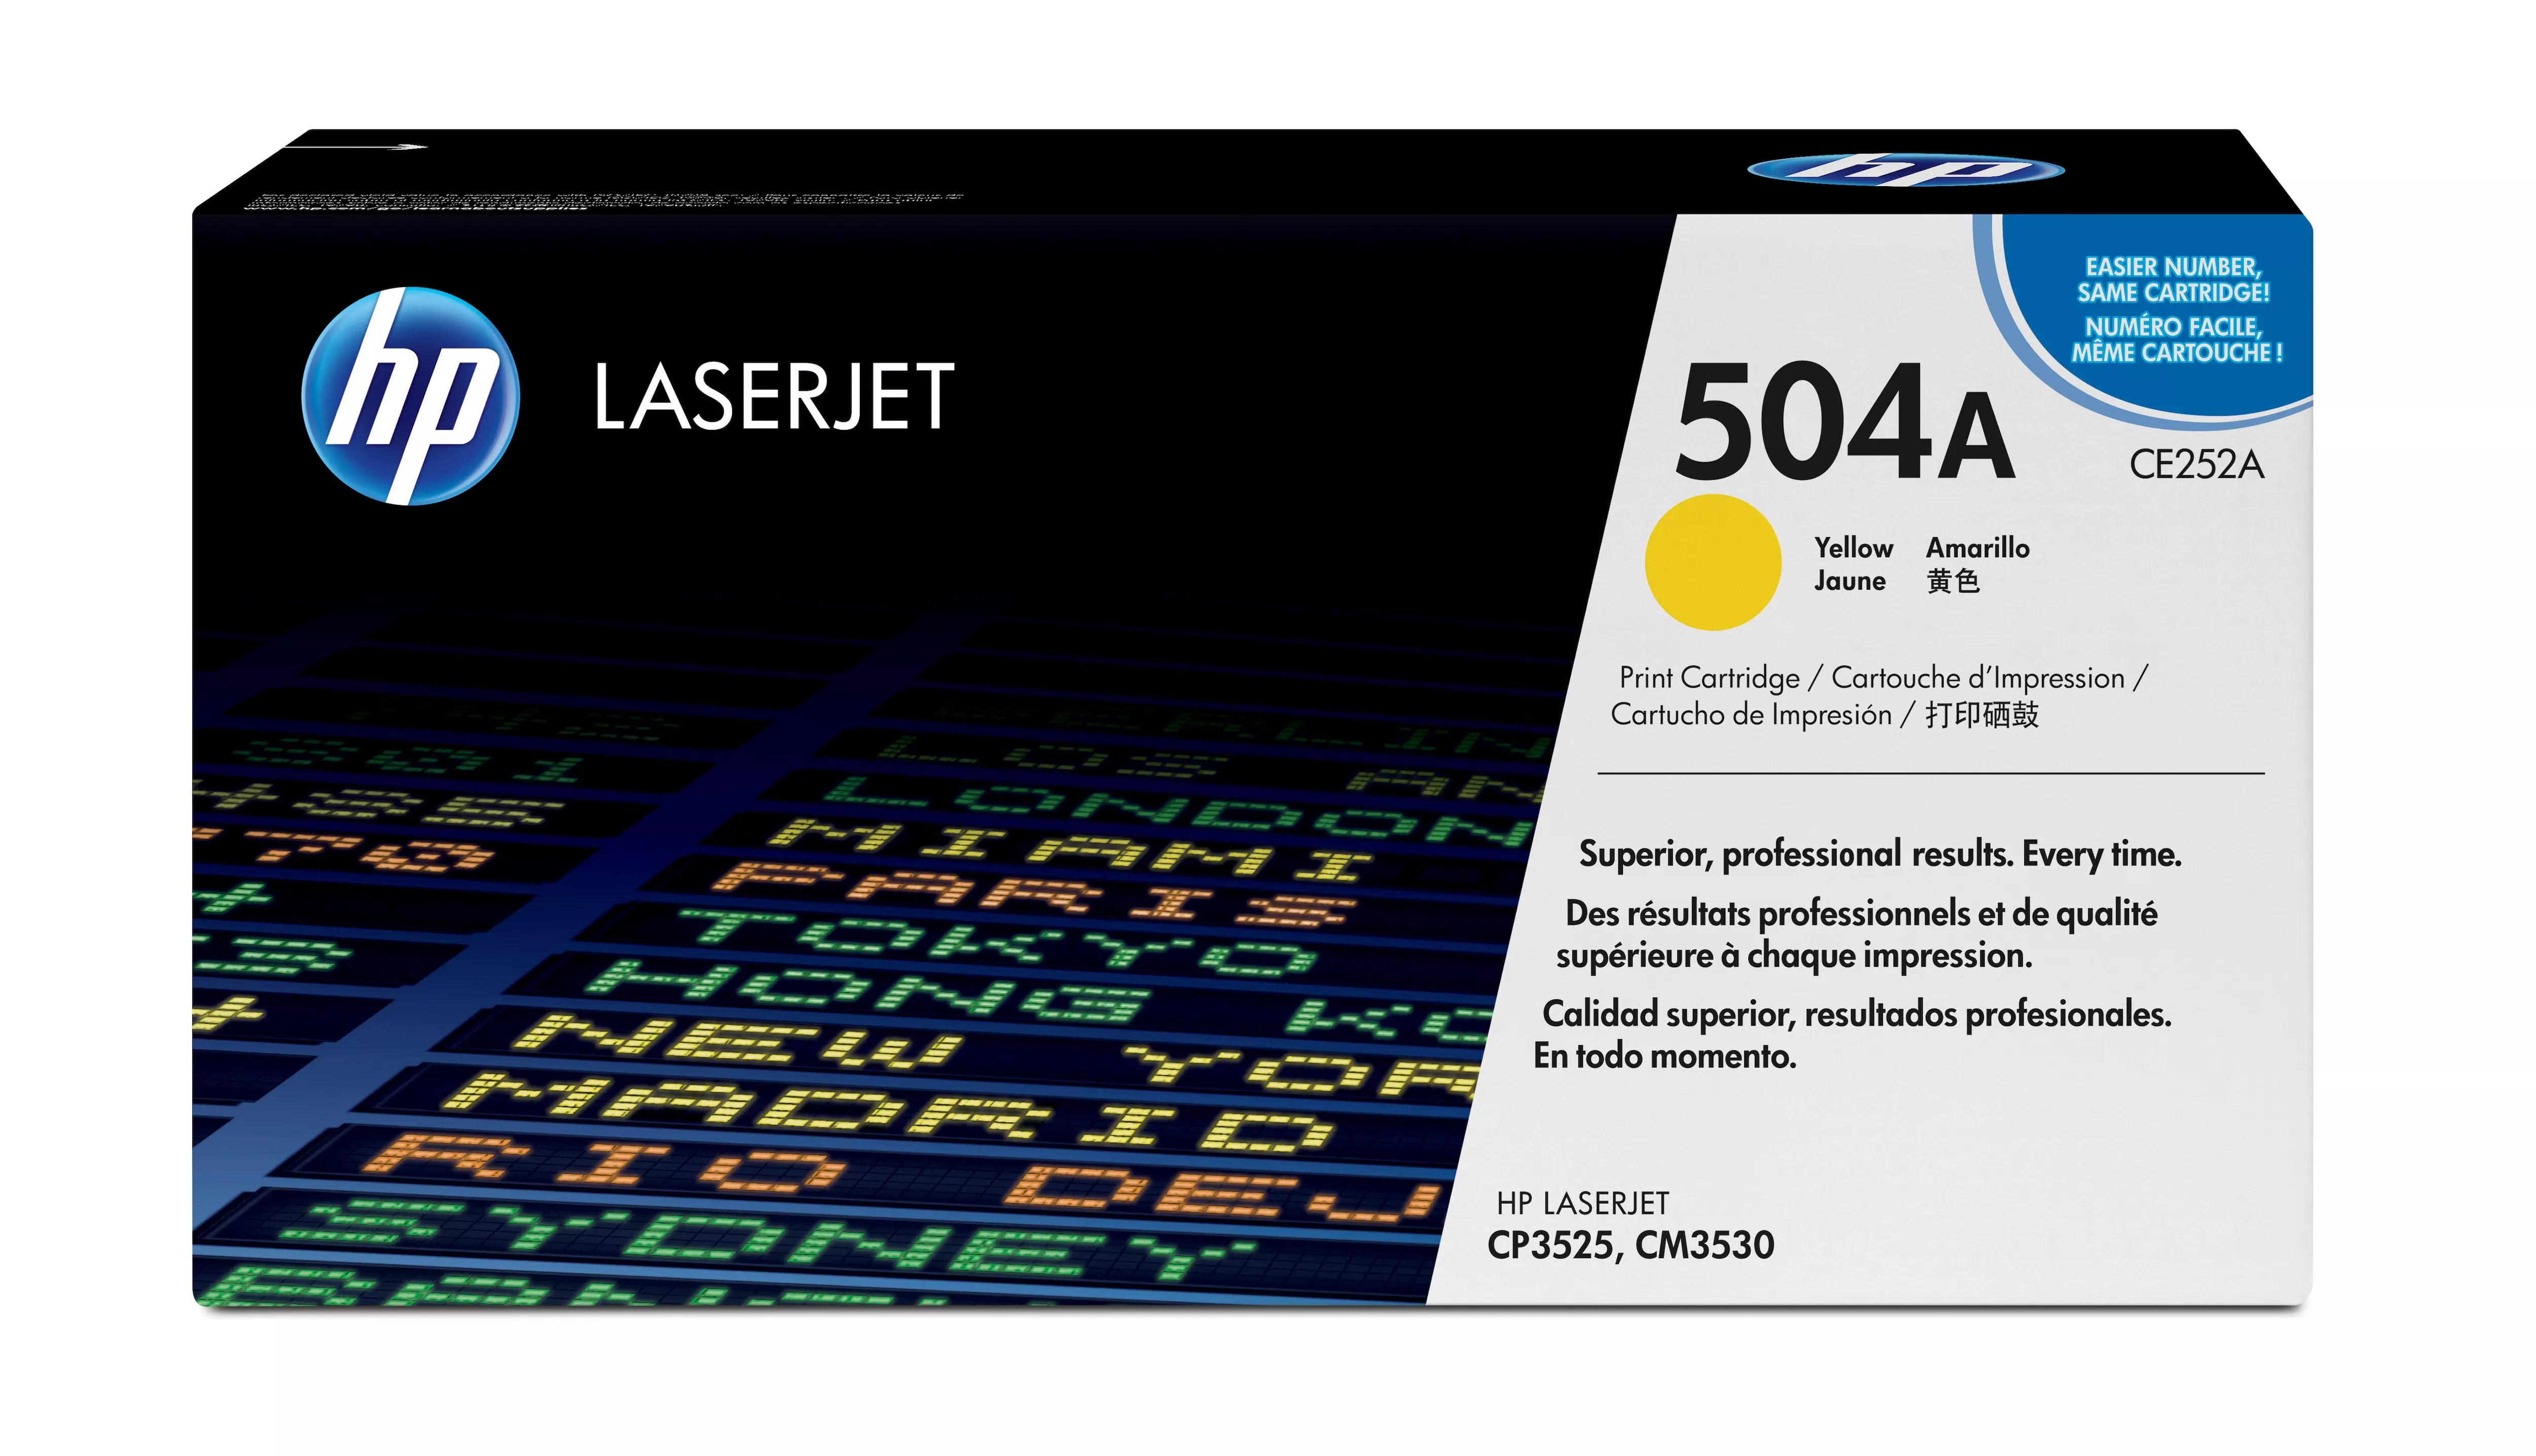 Achat HP 504A original Colour LaserJet Toner cartridge CE252A au meilleur prix